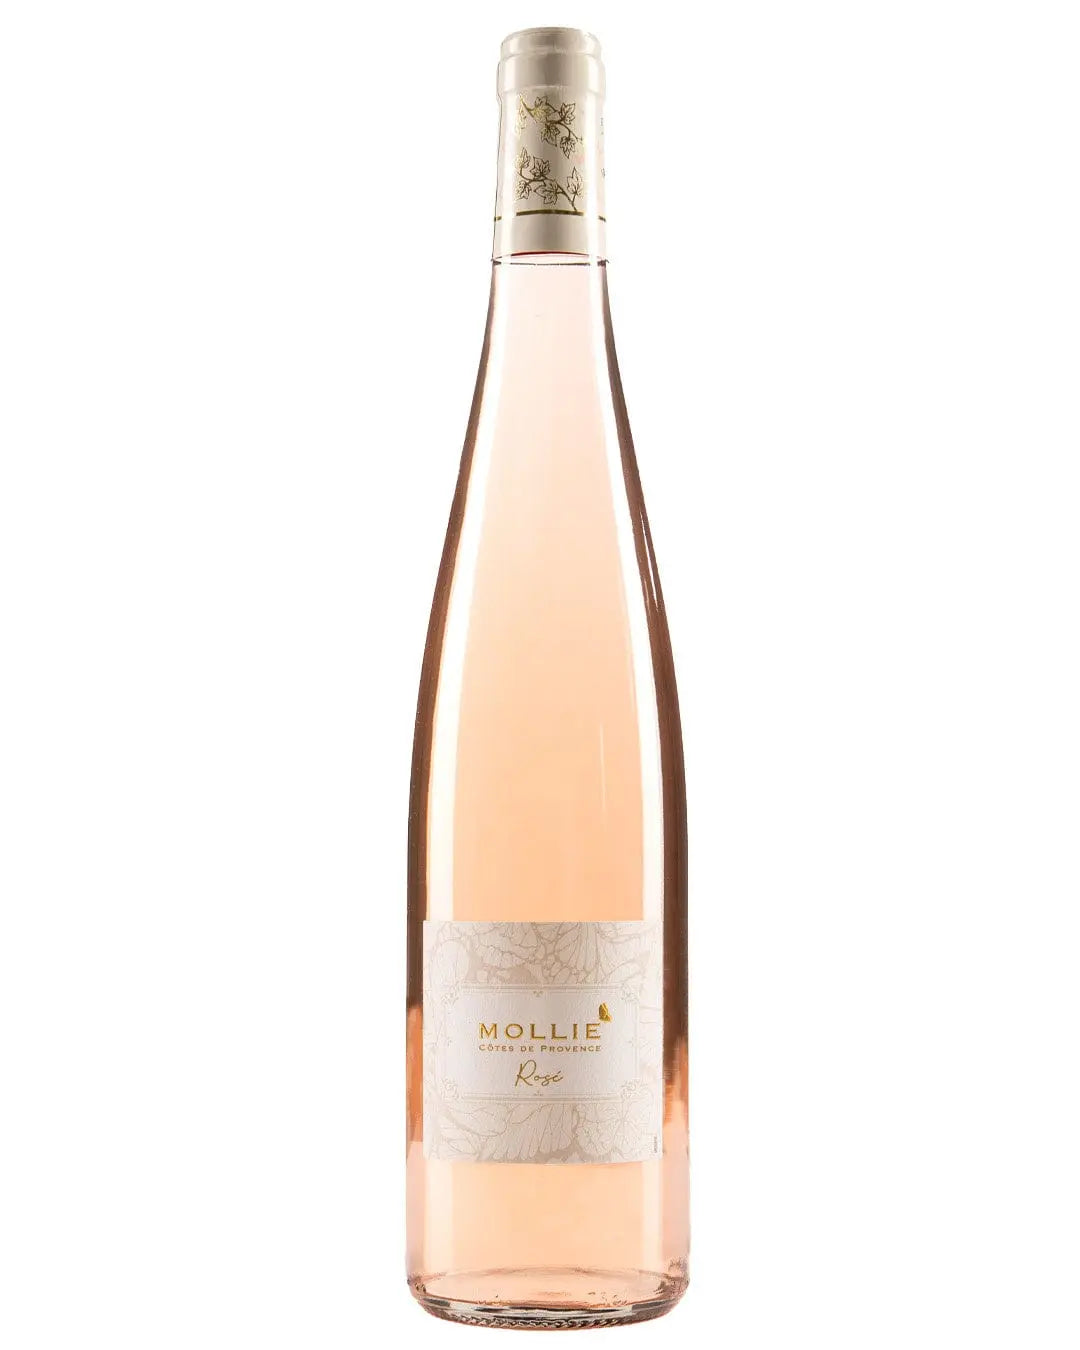 Champagne Rosé, Maxim's (75 cl)  La Belle Vie : Courses en Ligne -  Livraison à Domicile